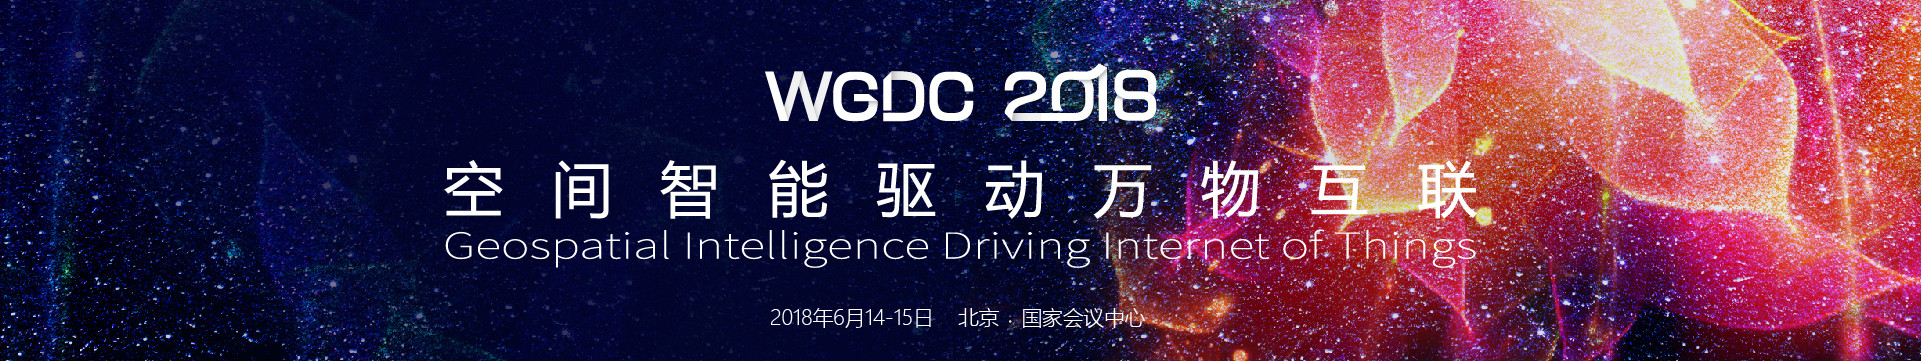 WGDC 2018地理信息开发者大会